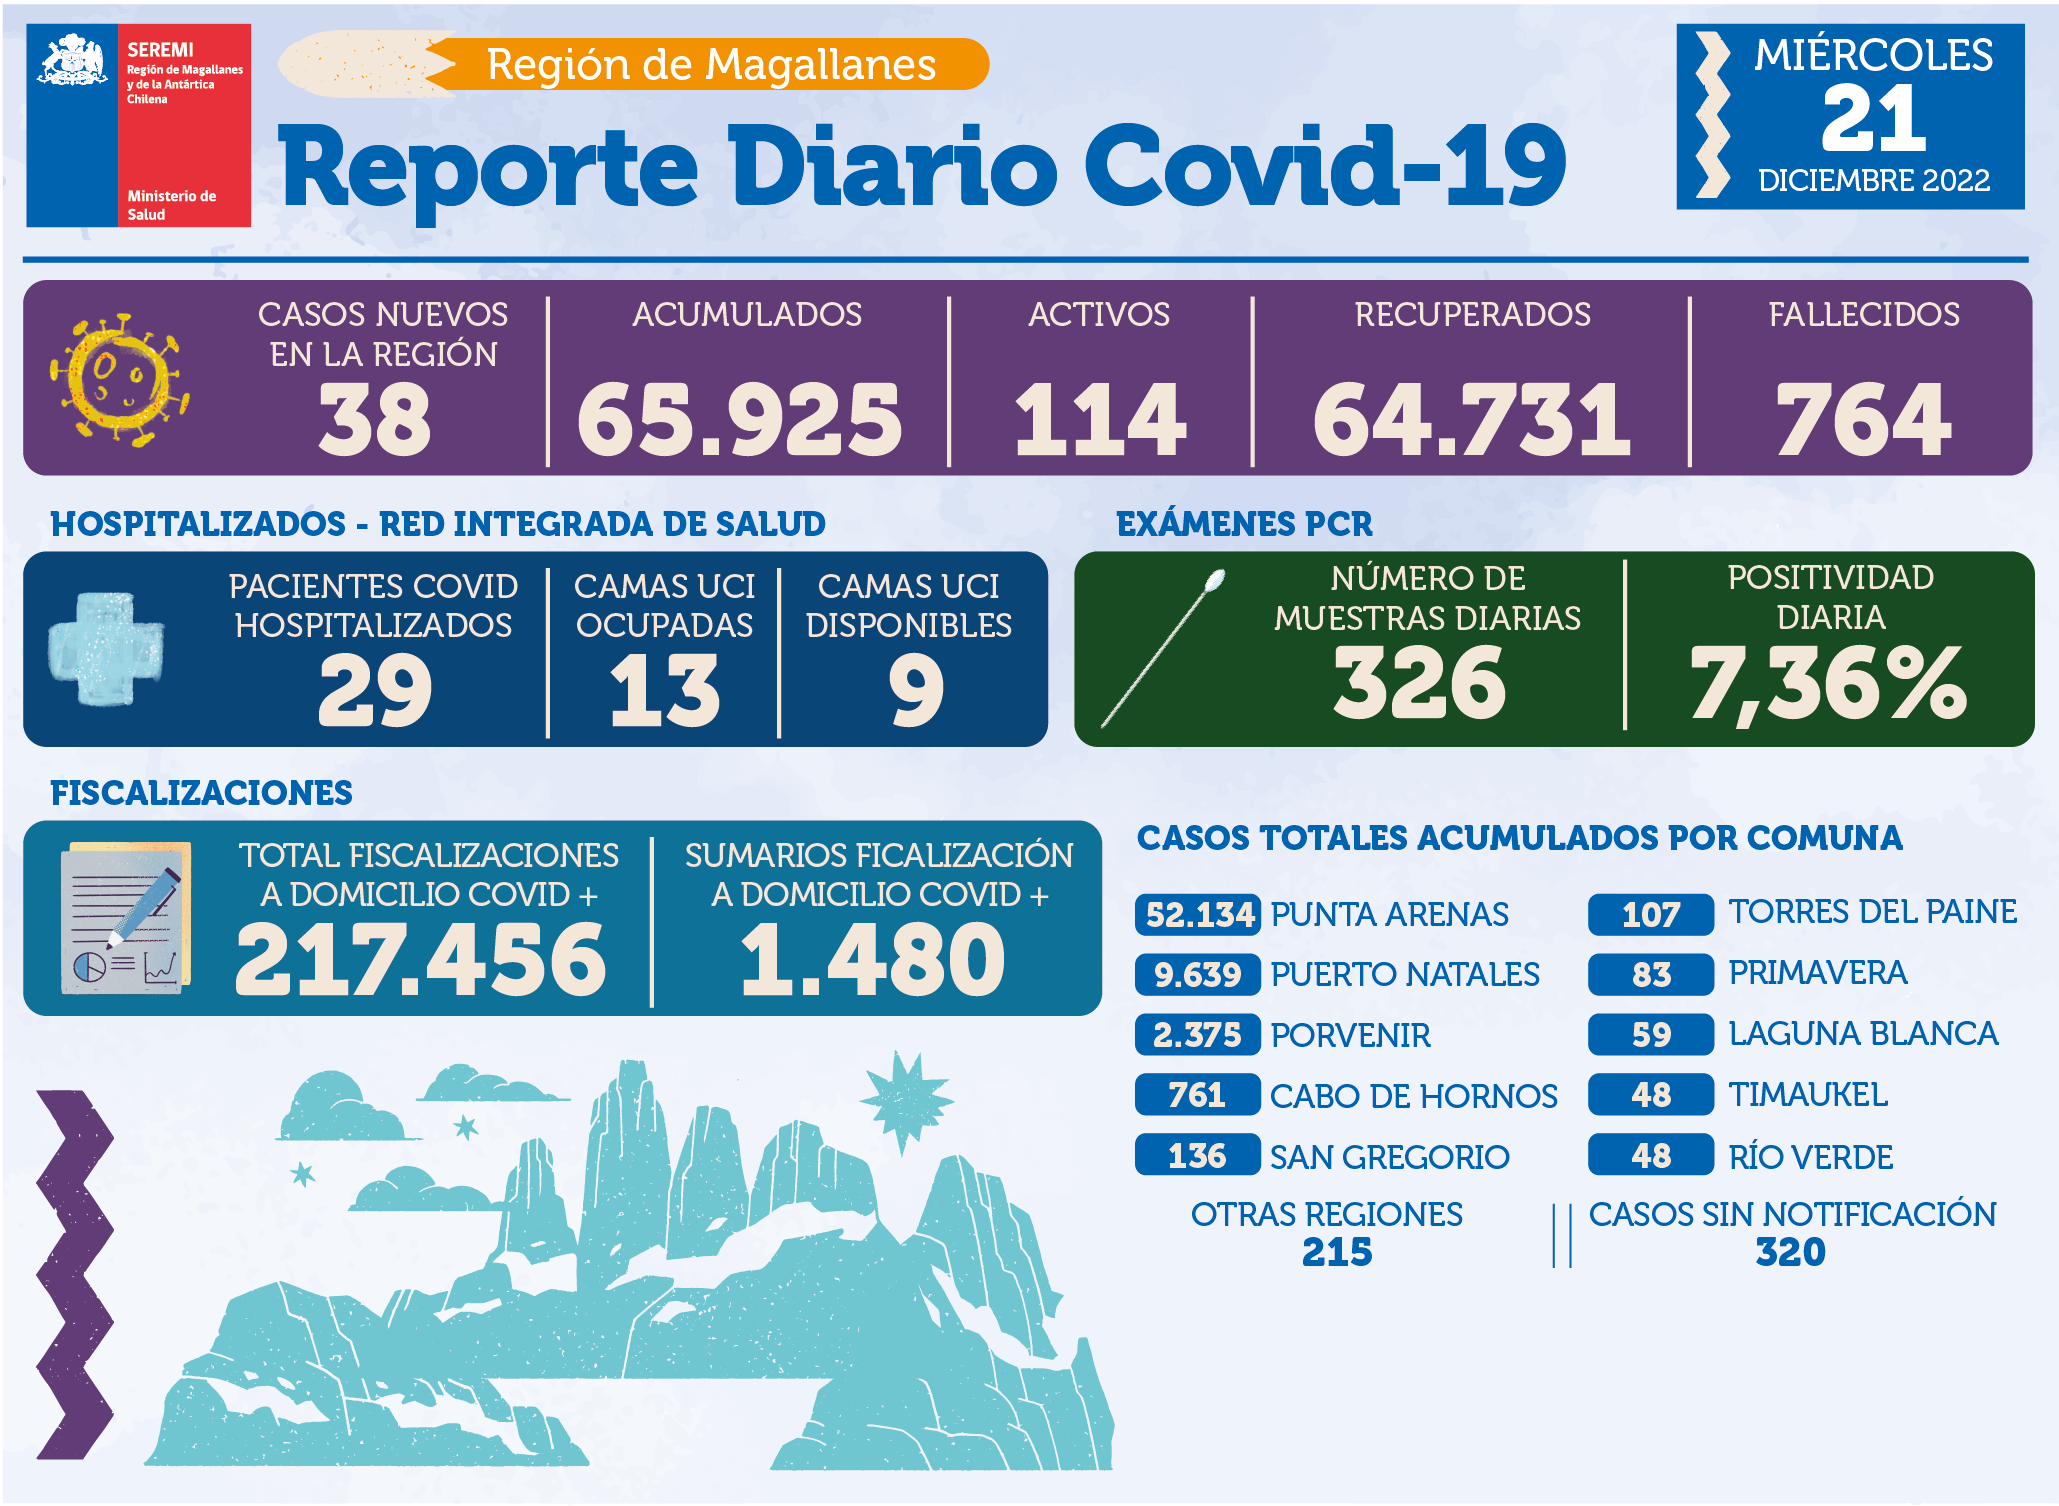 38 casos nuevos de covid19 se registran hoy en Magallanes